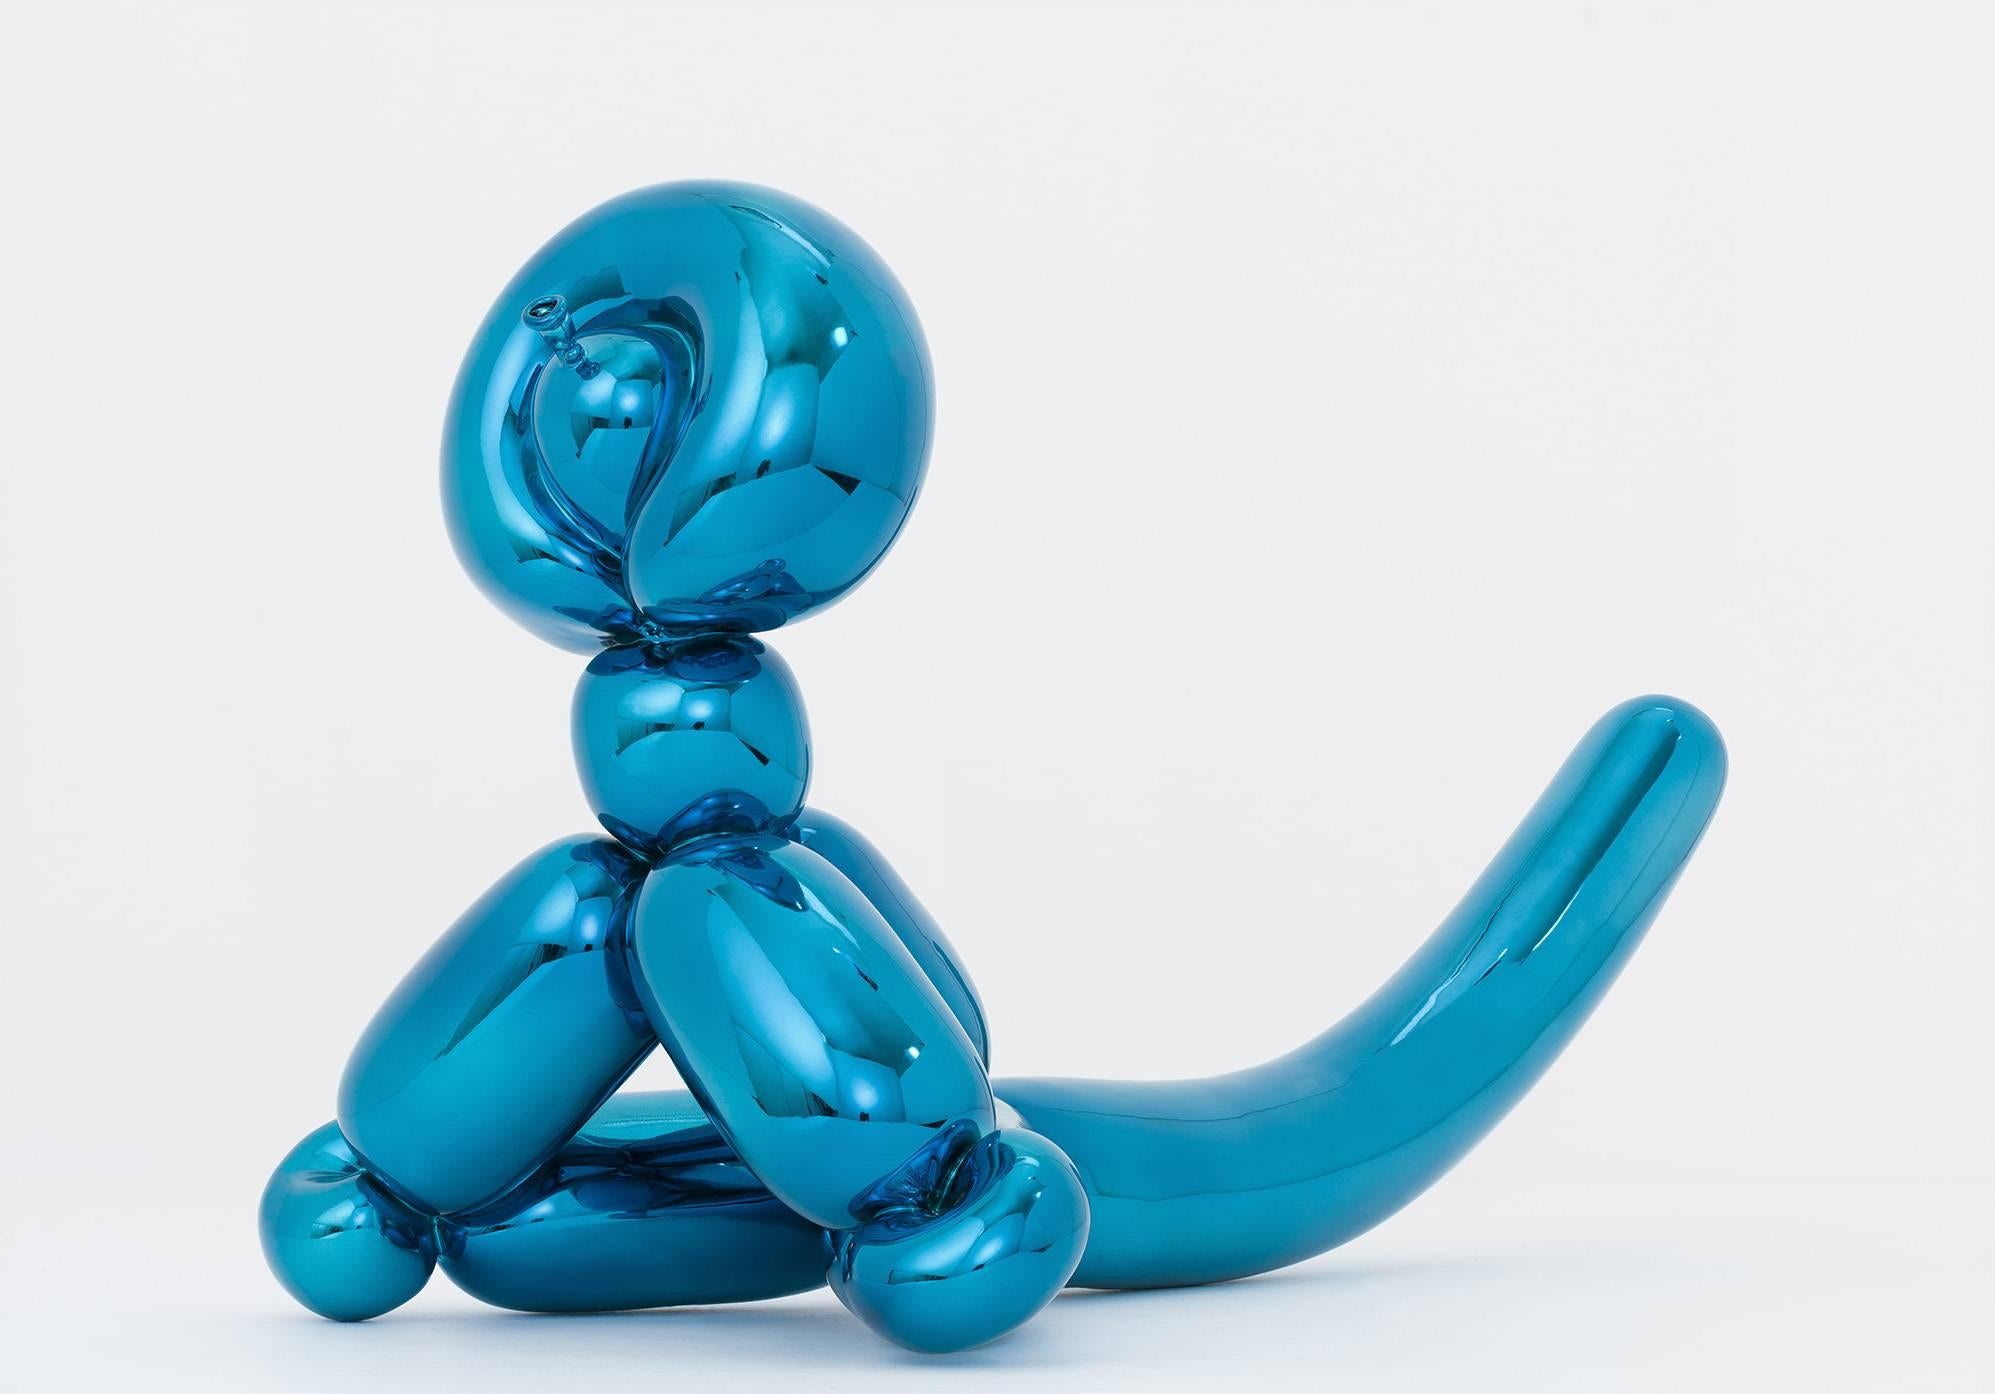 Jeff Koons Figurative Sculpture - Balloon Monkey (blue)